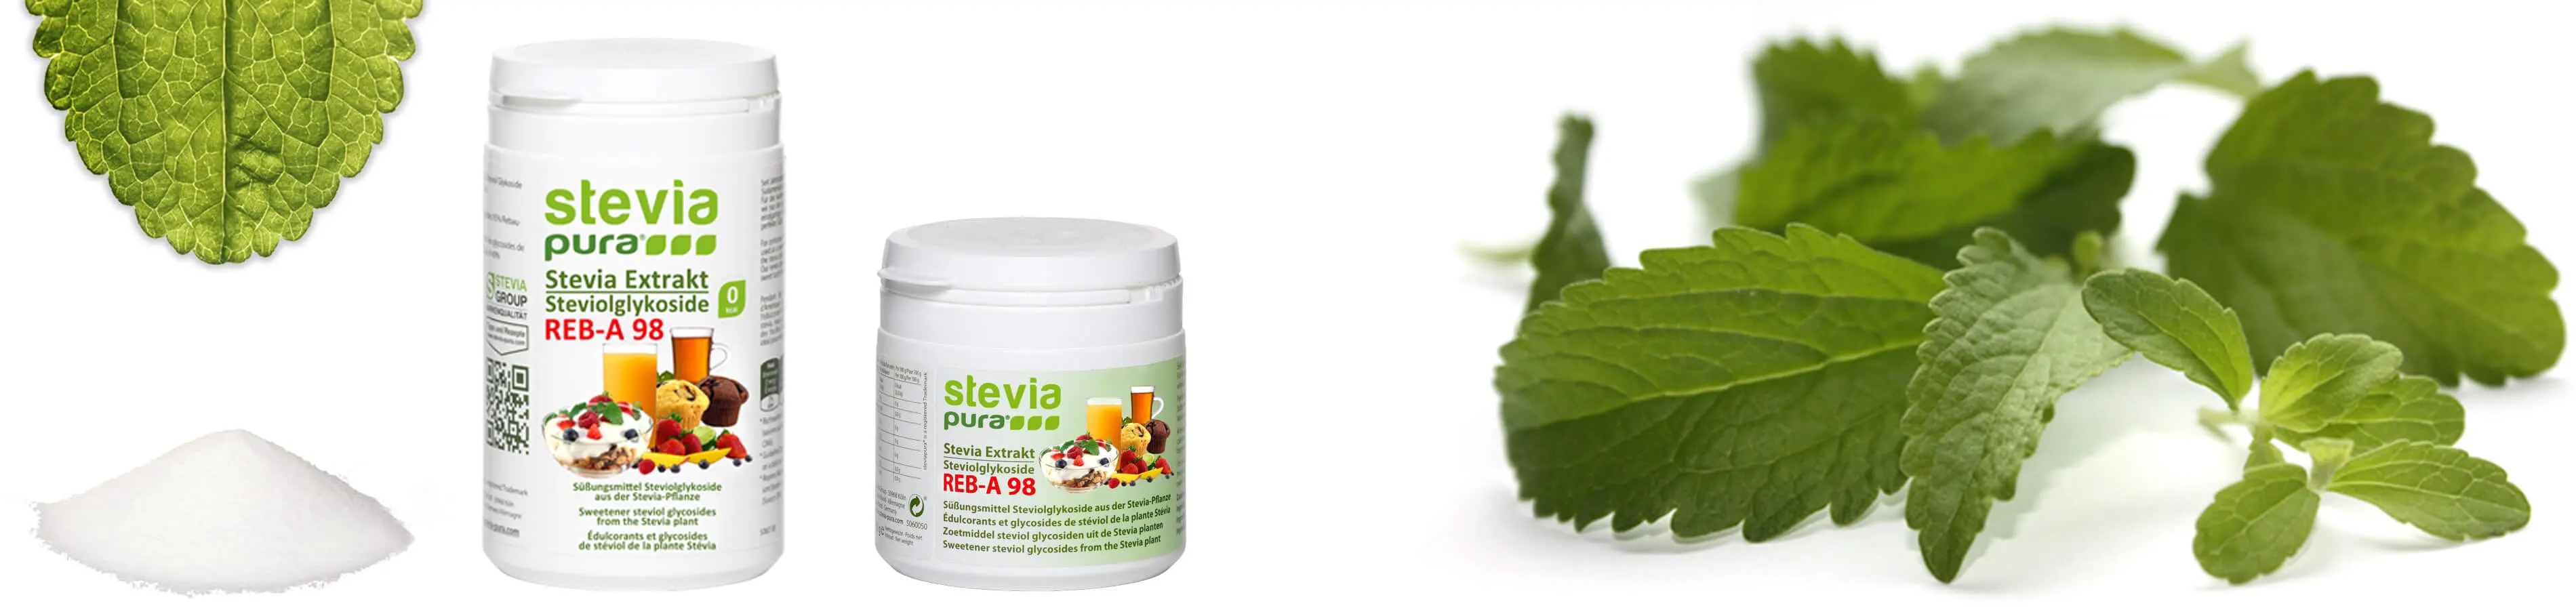 I Glicosidi Steviolici sono gli ingredienti dolci della pianta di Stevia. La polvere di Stevia pura e non adulterata viene utilizzata come sostituto dello zucchero o Dolcificante.